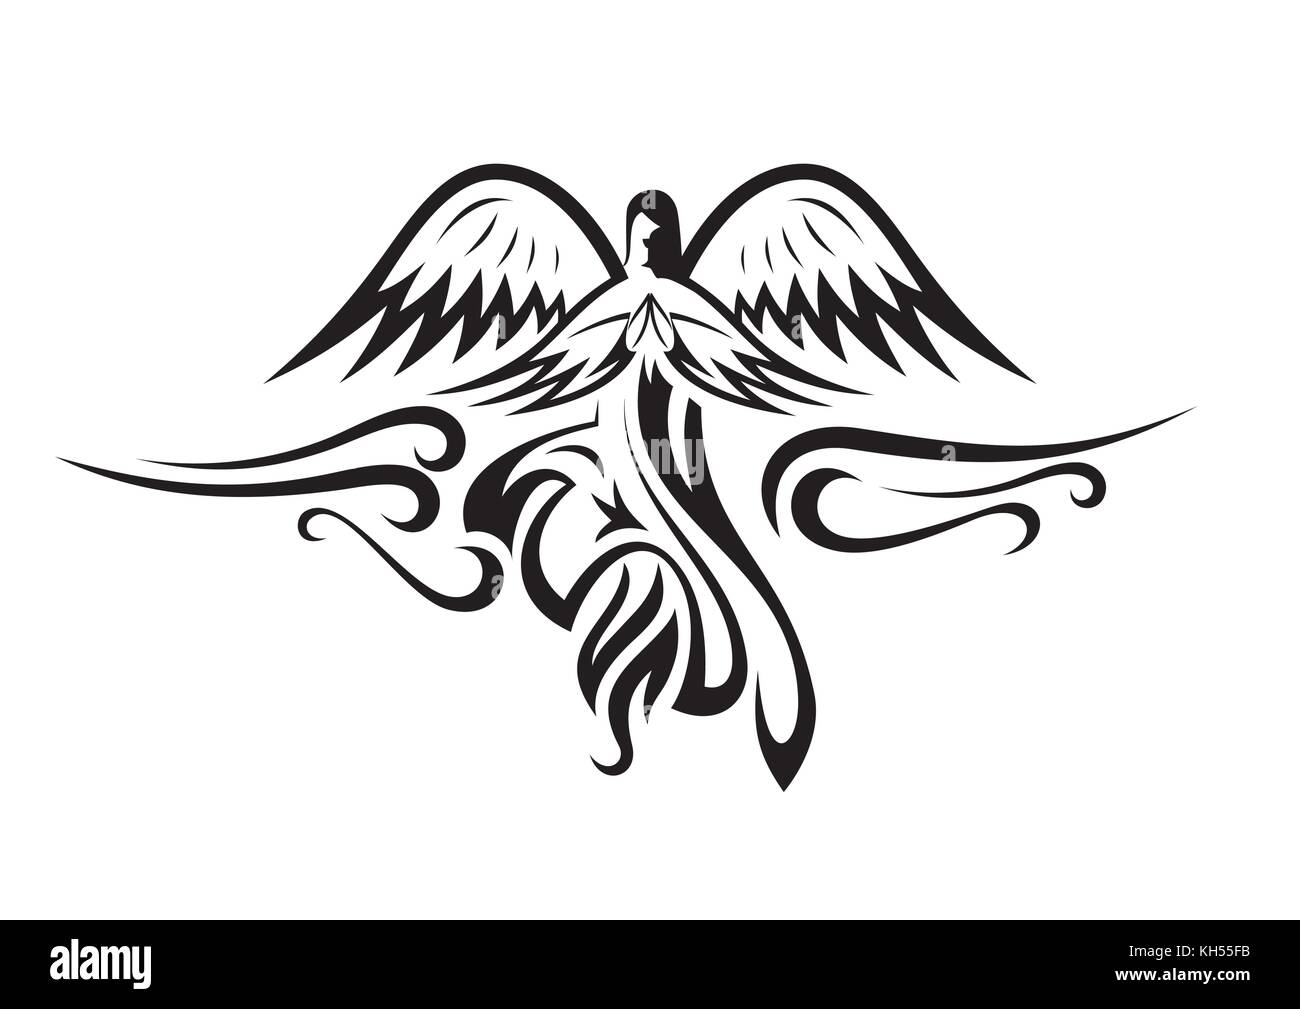 Angel tattoo Schwarzweiß-Stockfotos und -bilder - Seite 2 - Alamy